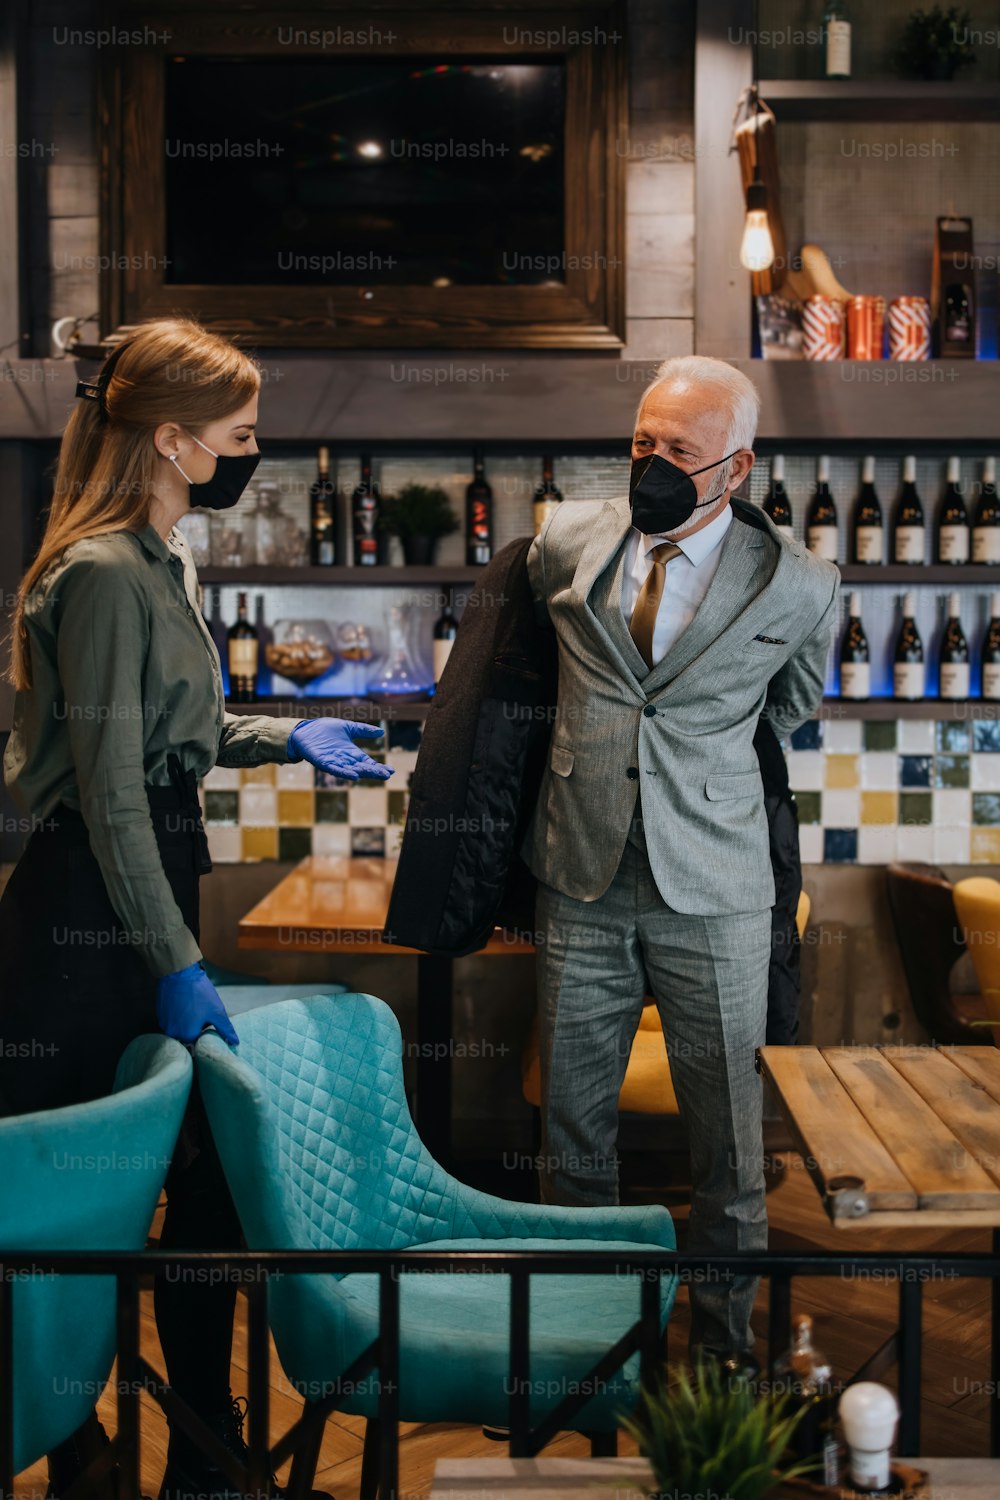 Selbstbewusster Geschäftsmann im exklusiven Restaurant. Er zieht seinen Mantel aus, während die Kellnerin ihm hilft. Beide tragen Schutzmasken gegen Virusinfektionen.